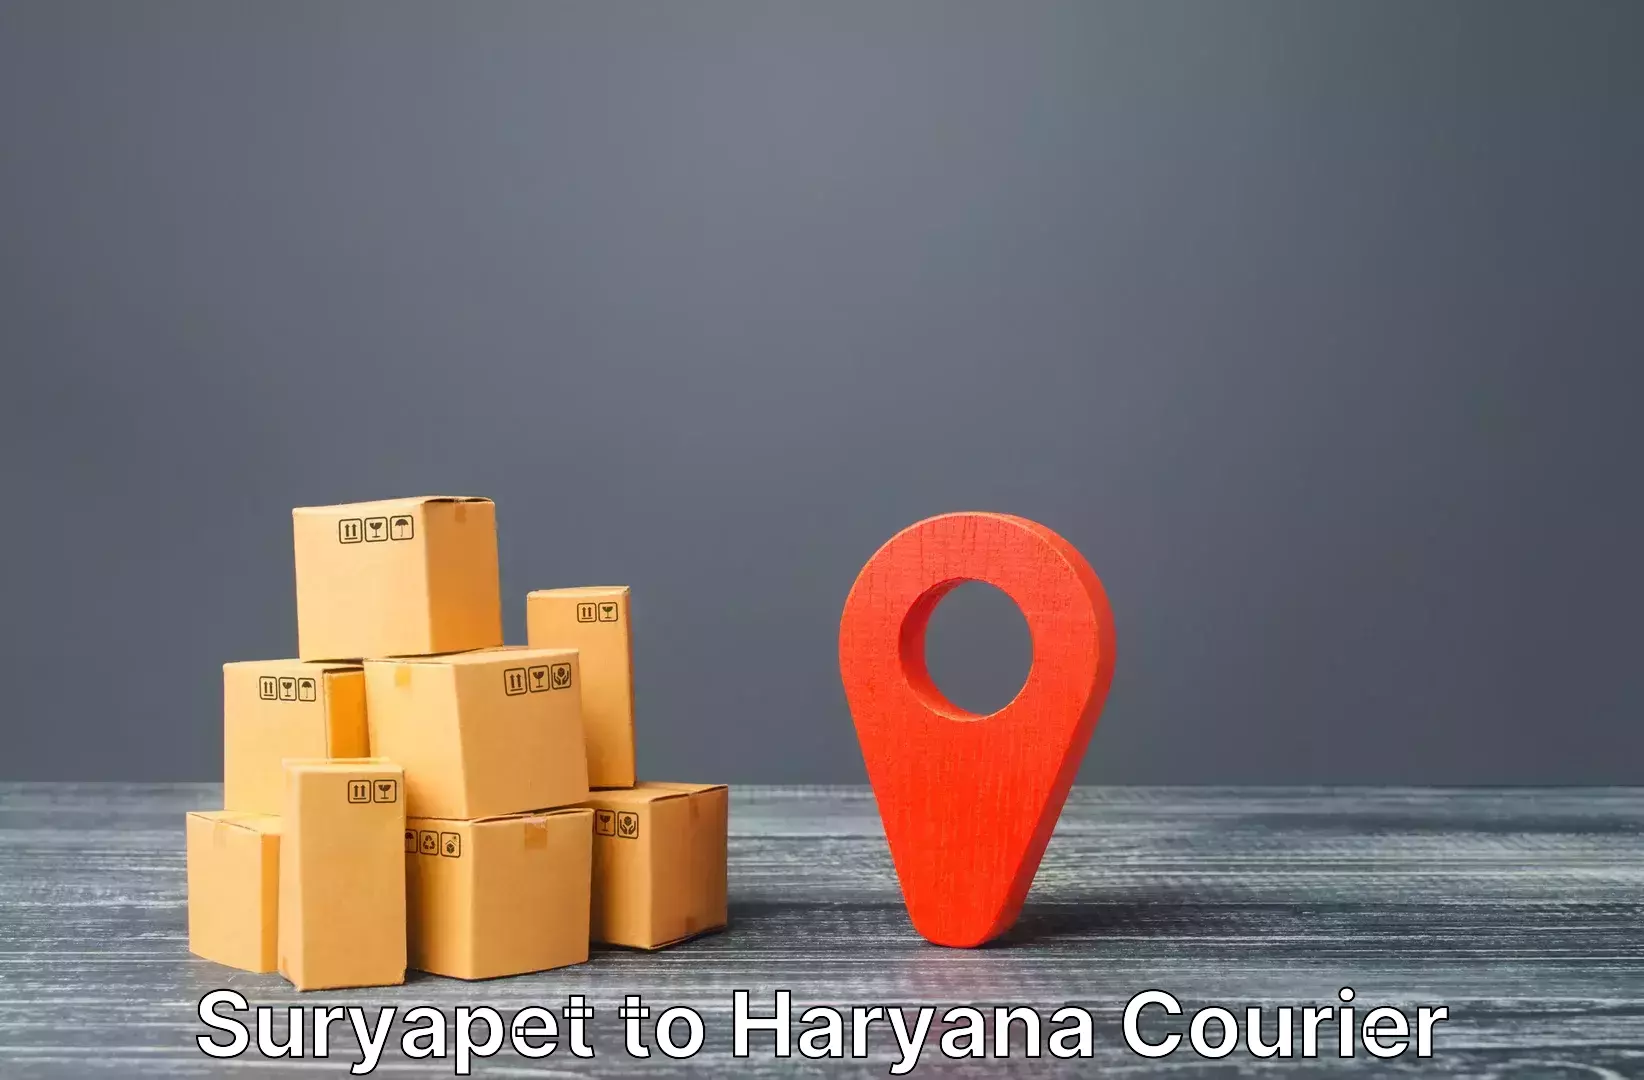 Luggage transport logistics Suryapet to Haryana